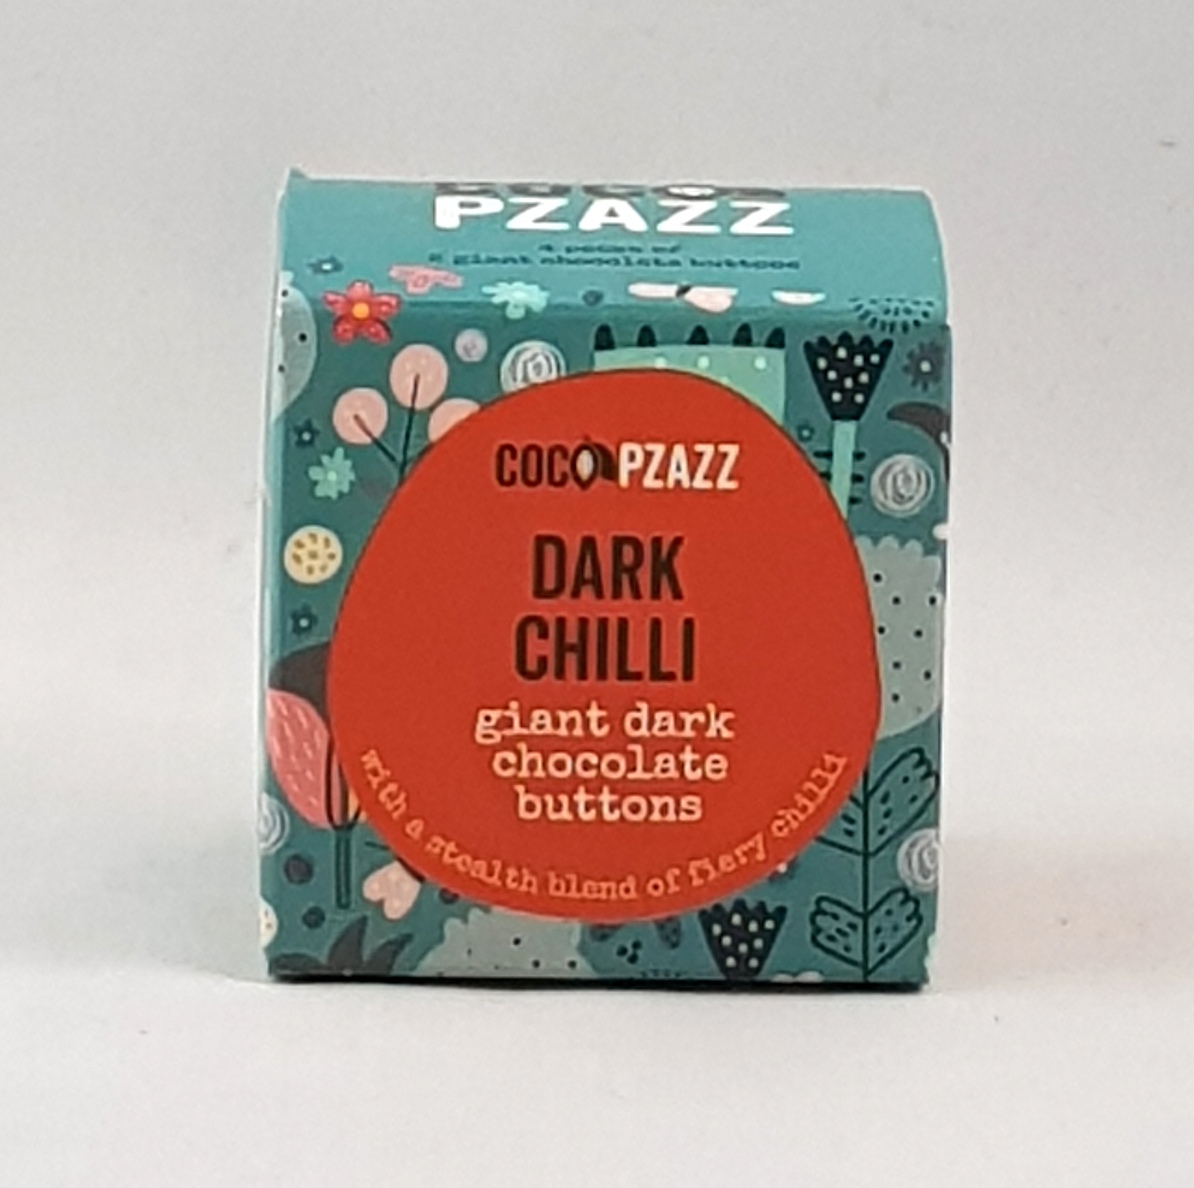 Coco Pzazz Dark Chilli Buttons